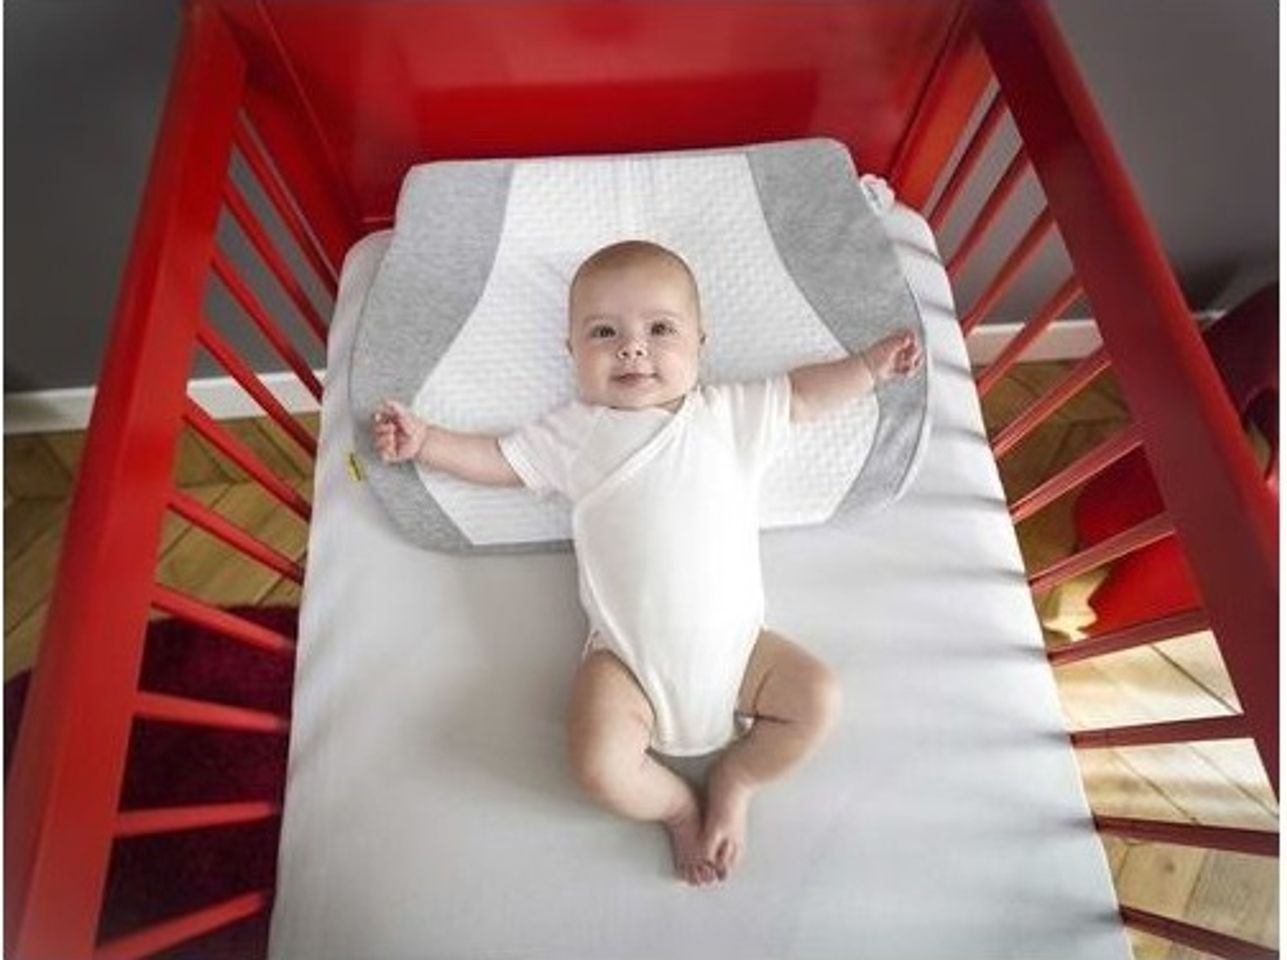 Gối chống trào ngược Babymoov giúp bé thoải mái nhất khi ngủ